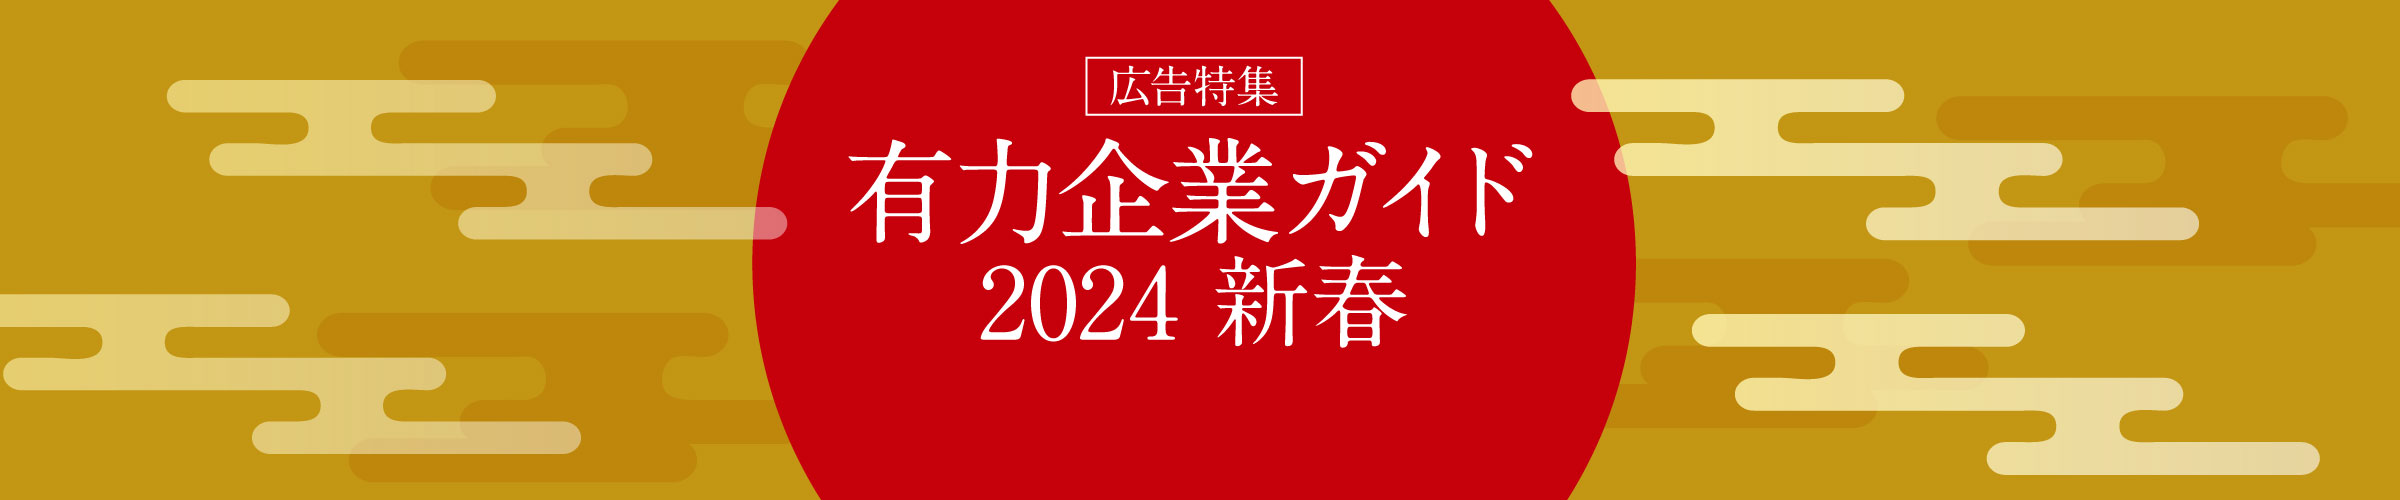 広告特集 有力企業ガイド 2024 新春